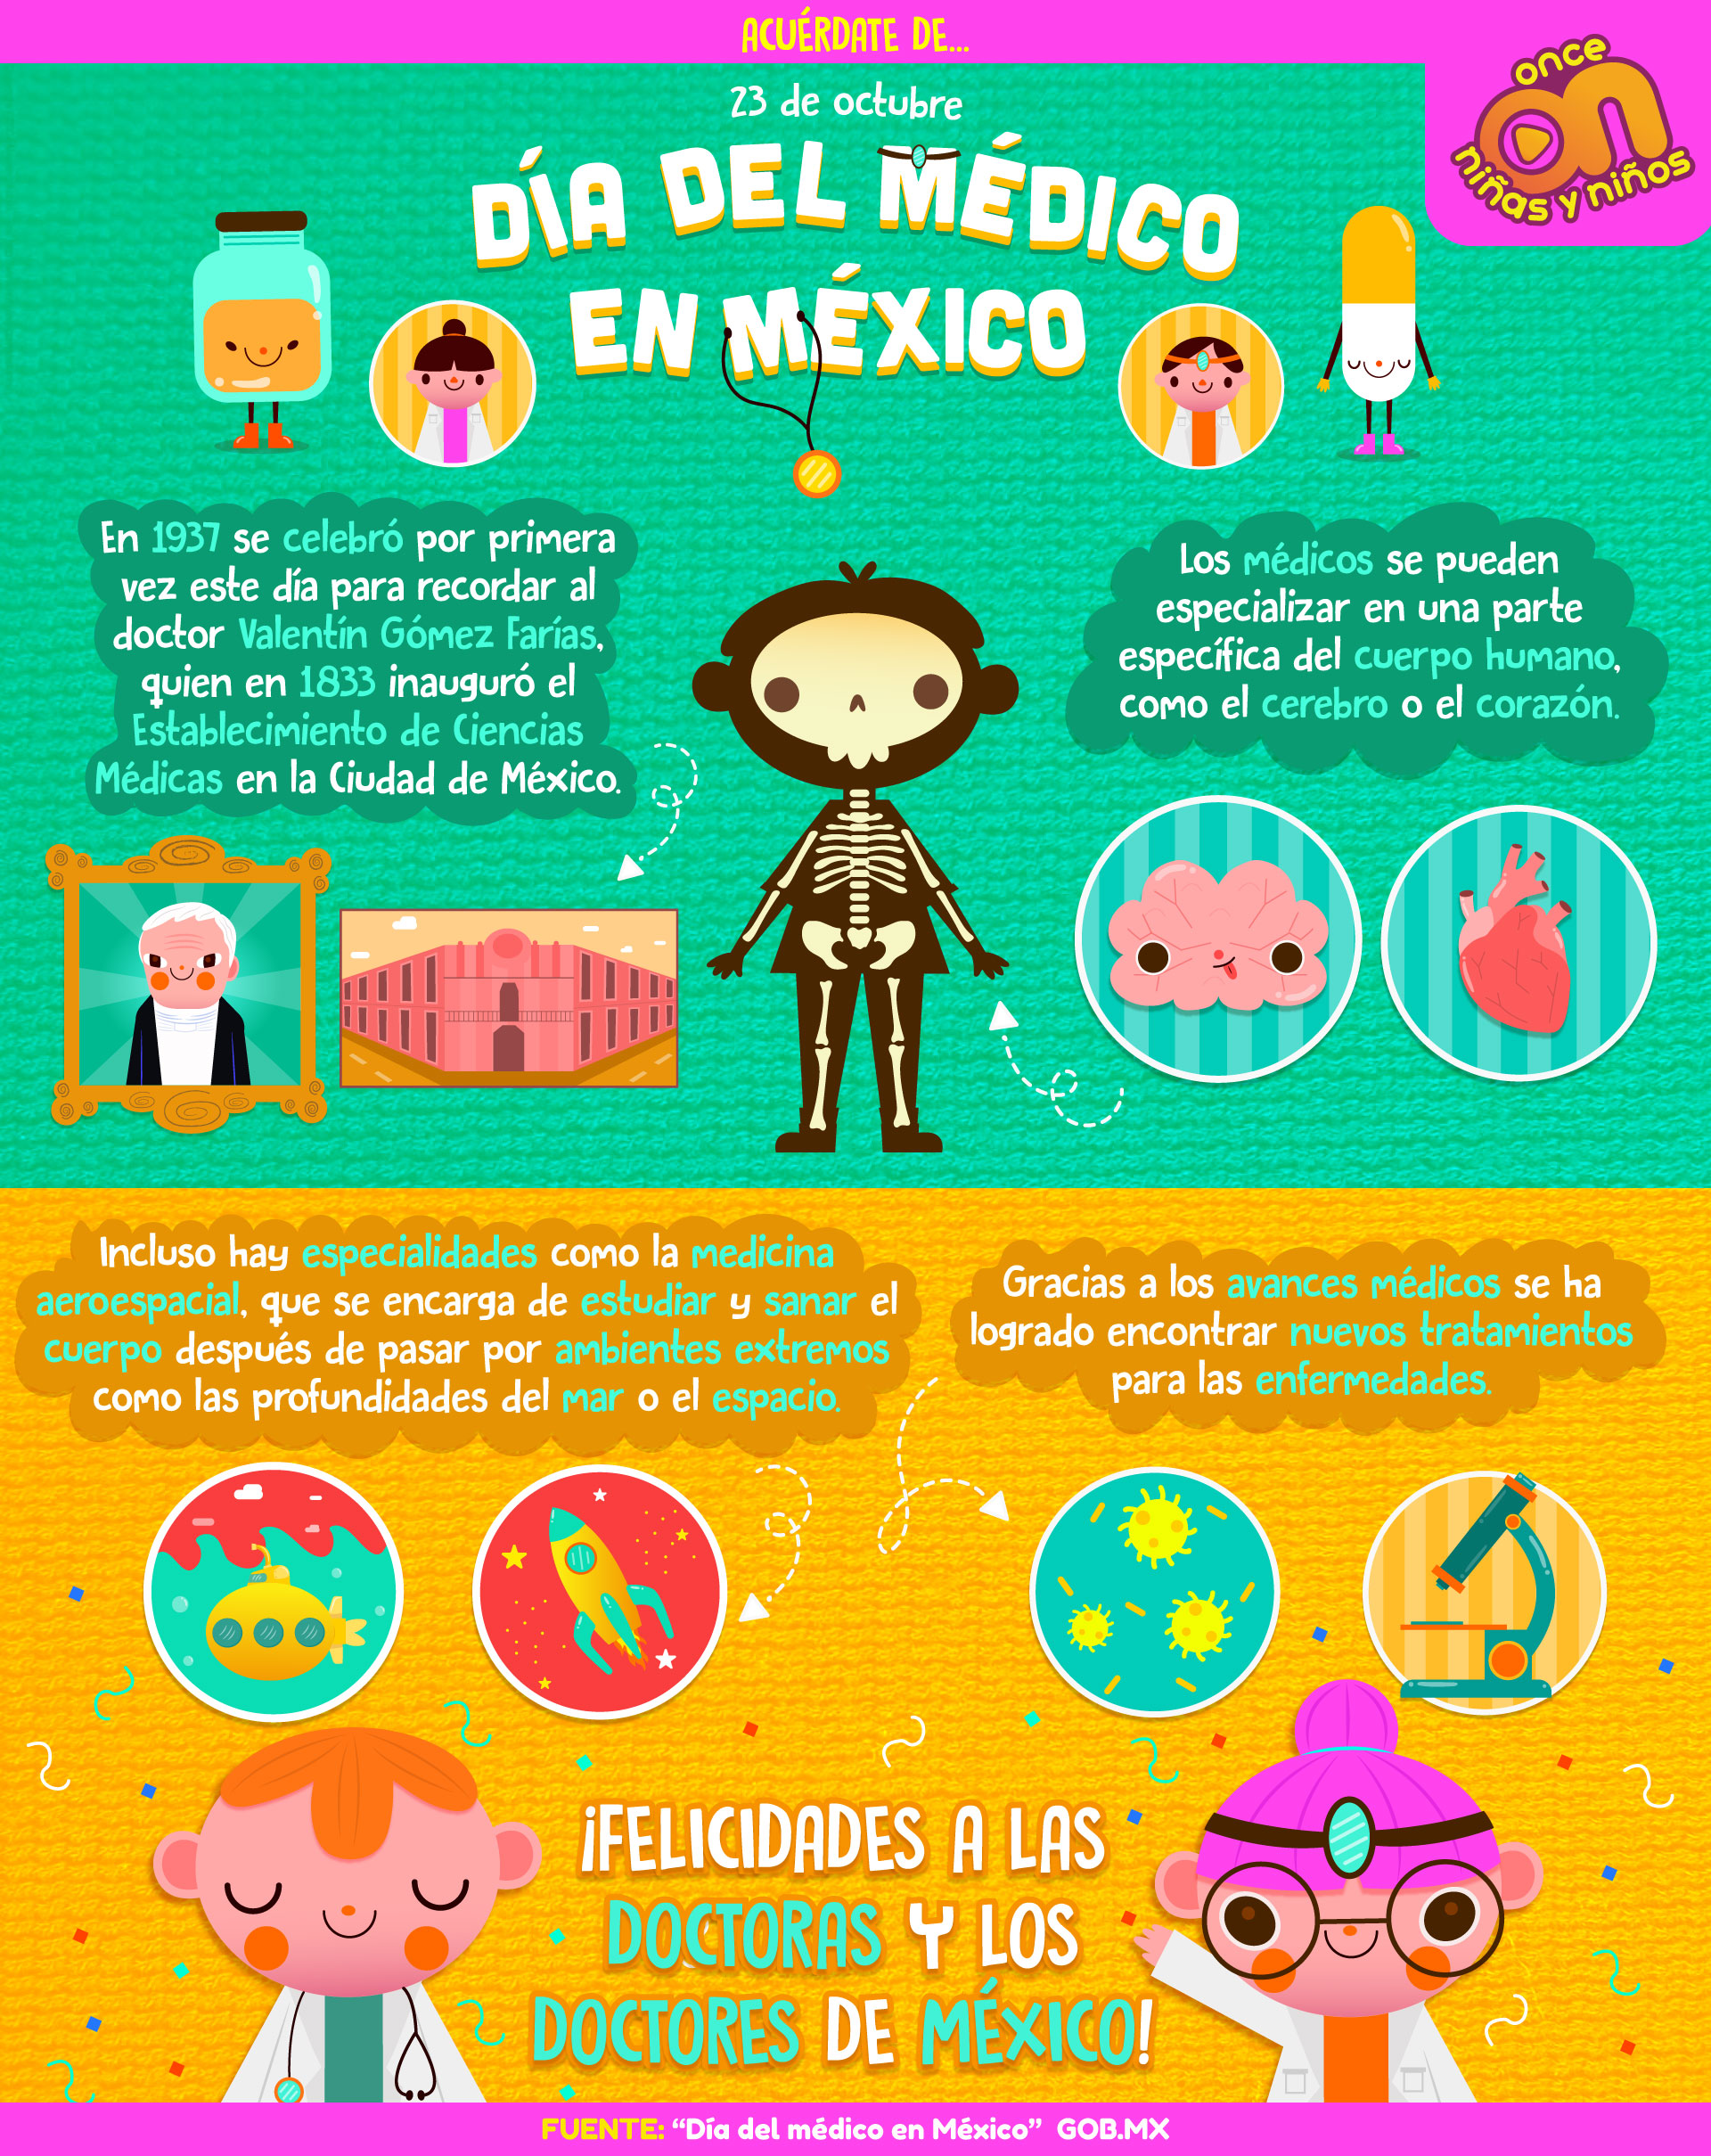 Día del Médico en México
23 de octubre
once Niñas y Niños